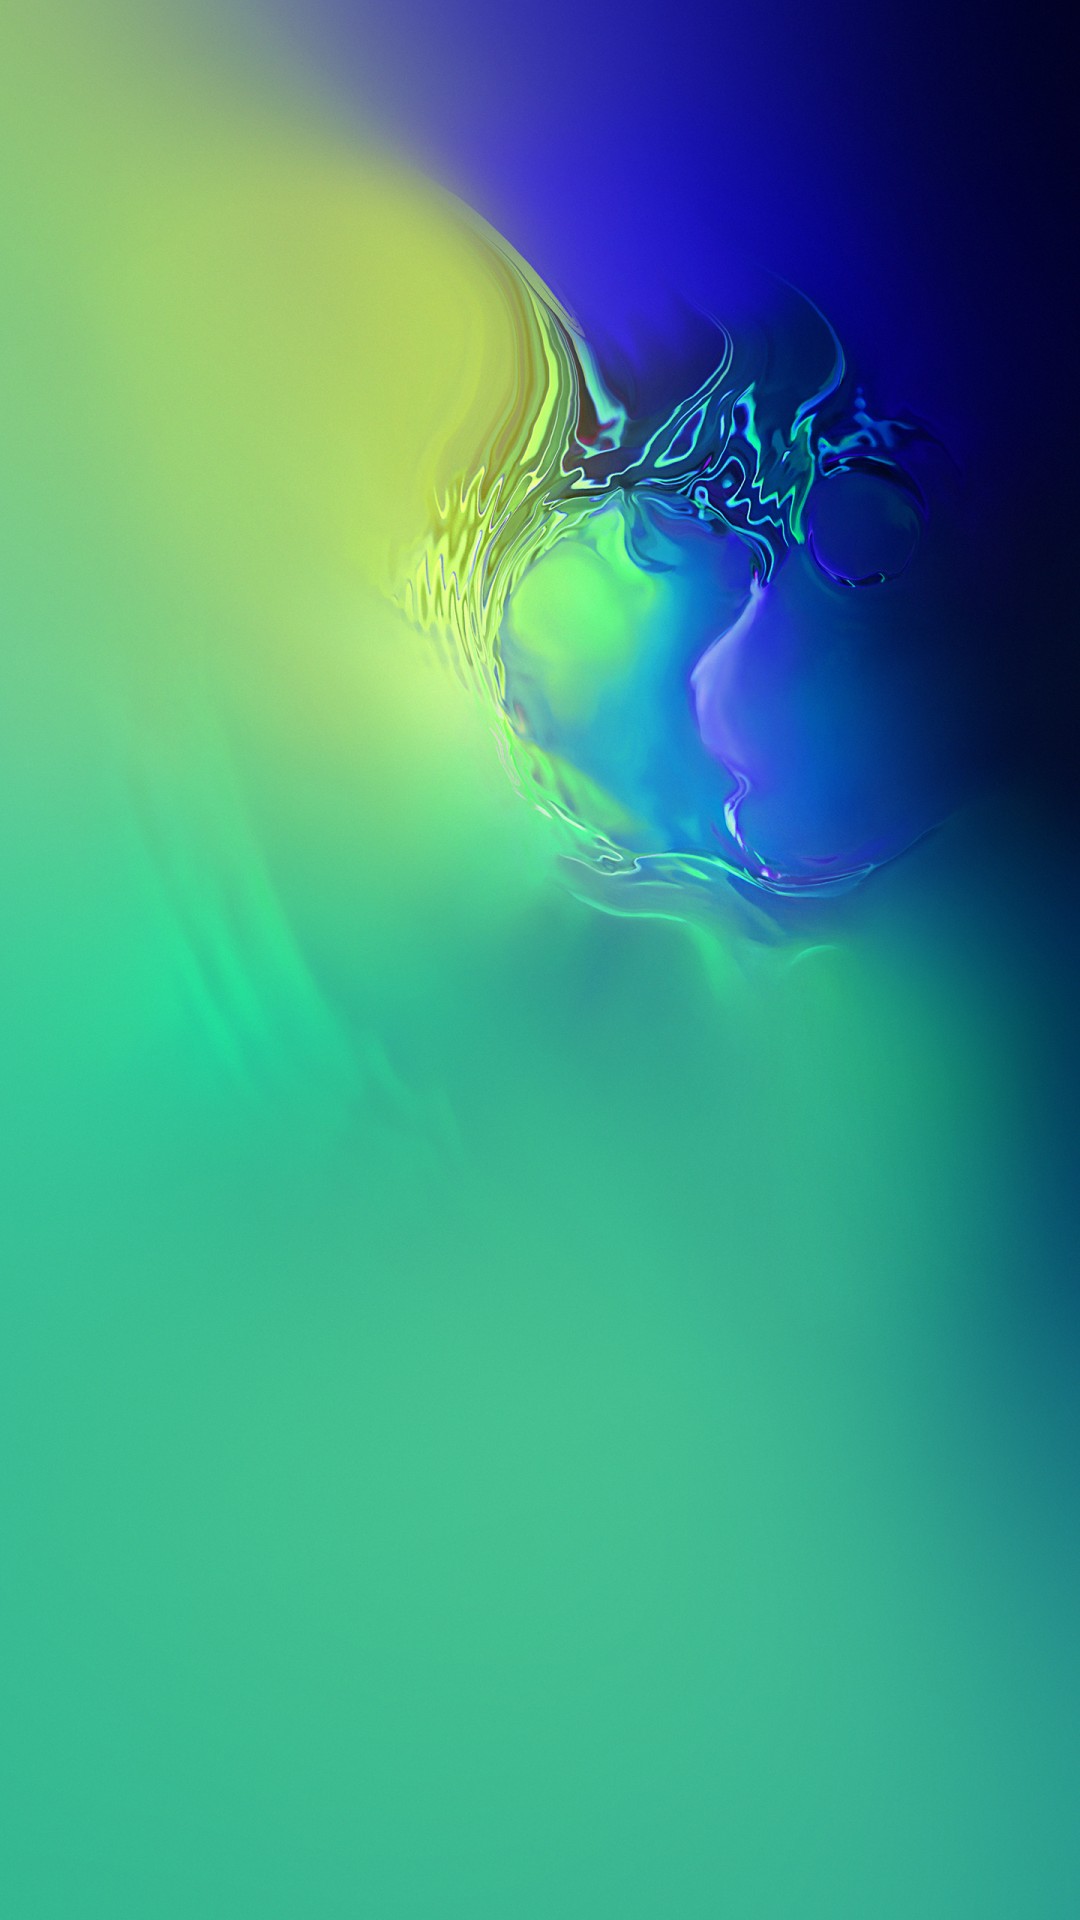 ultra hd wallpaper für android,grün,blau,wasser,flüssigkeit,grafikdesign